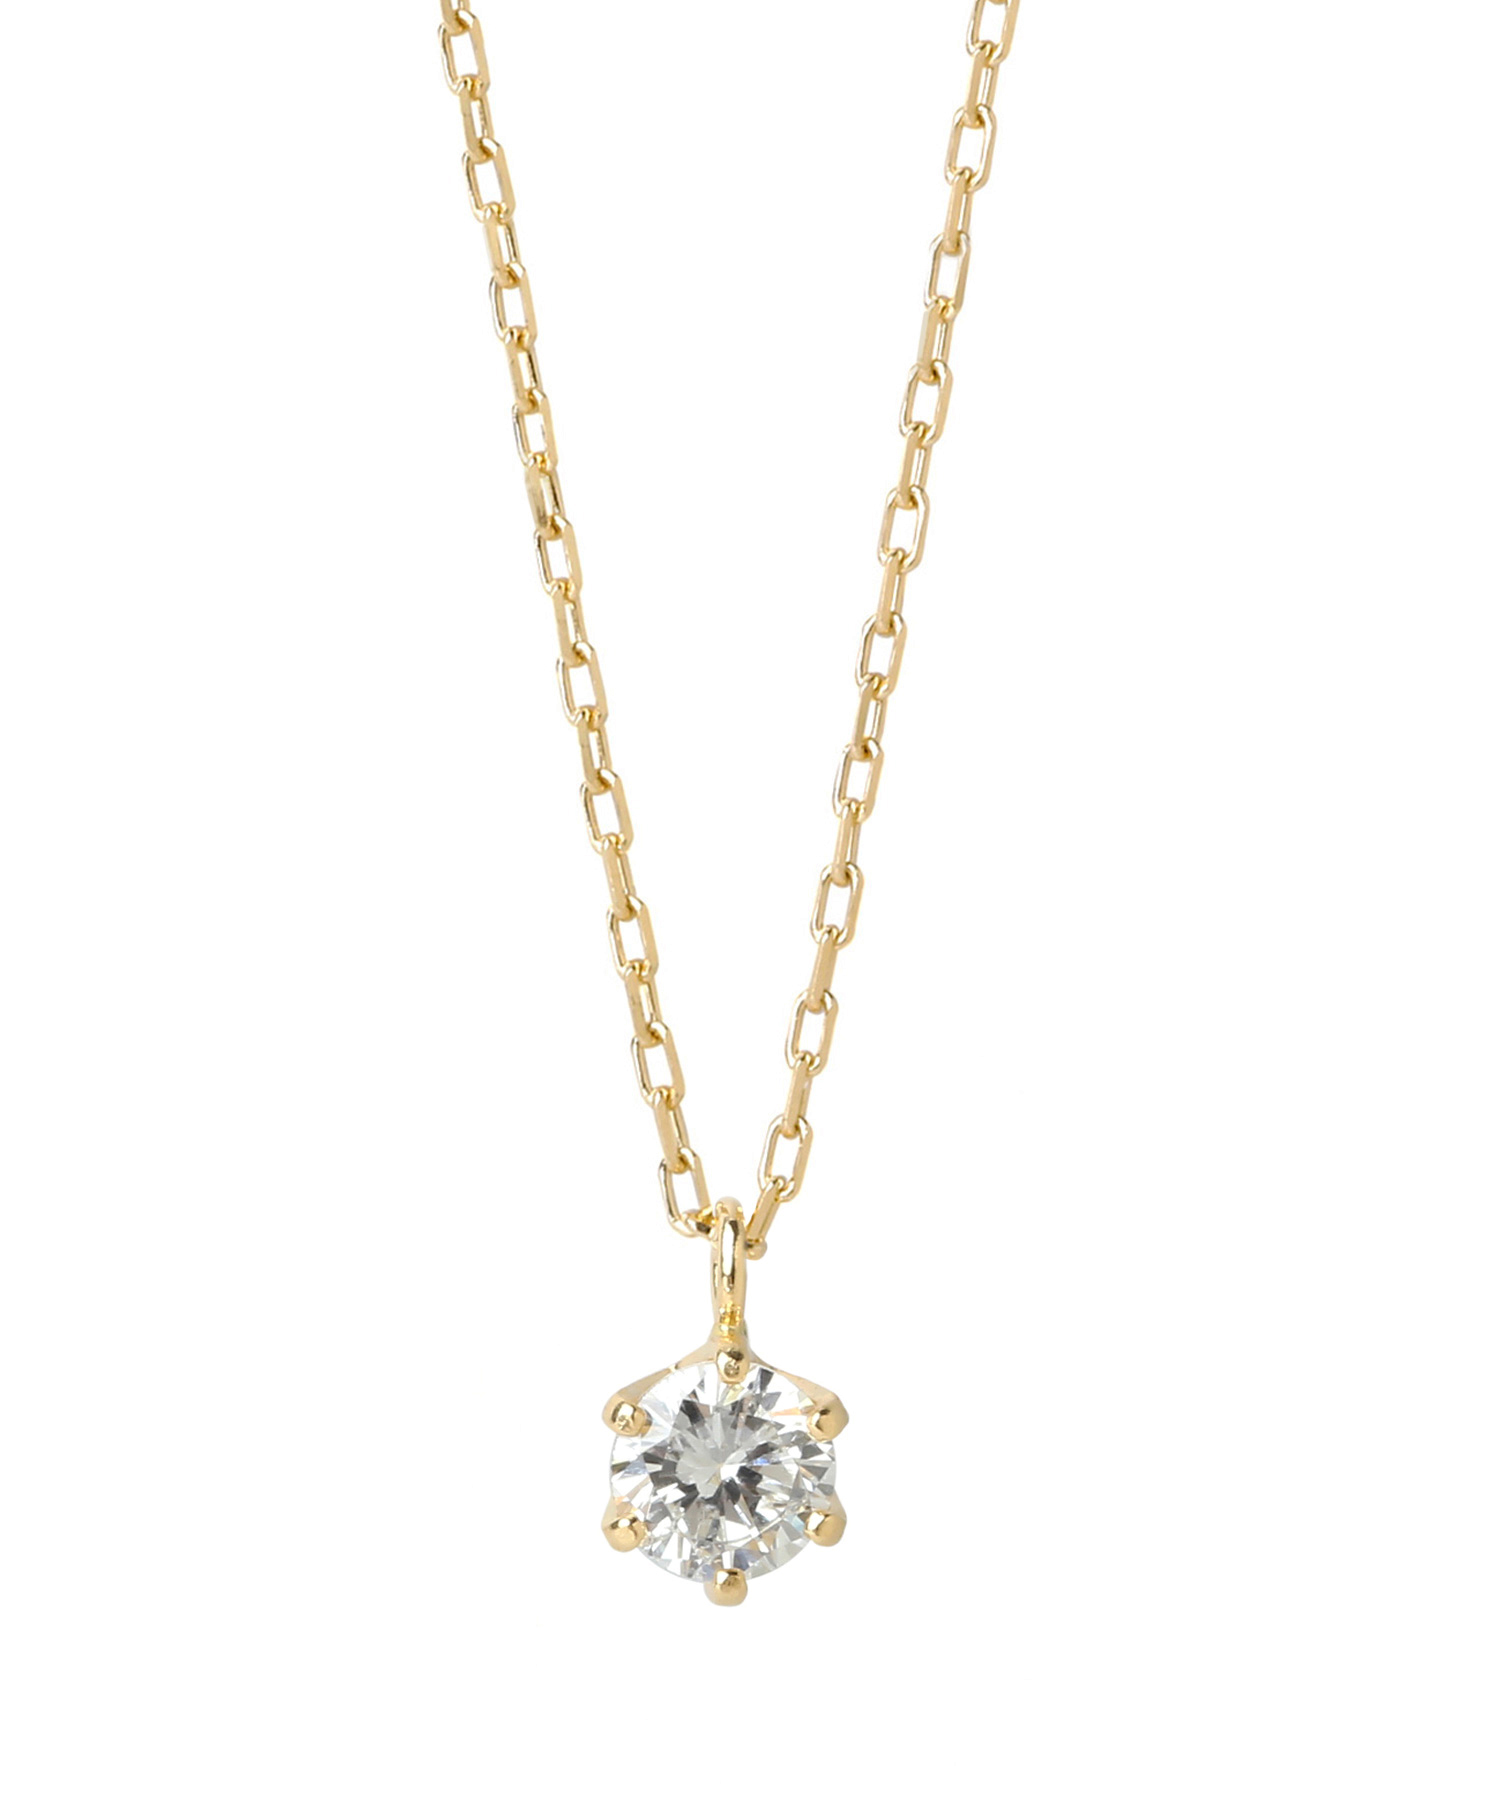 【SIENA ROSE】一粒ダイヤモンドの18金ネックレス[0.1ct 